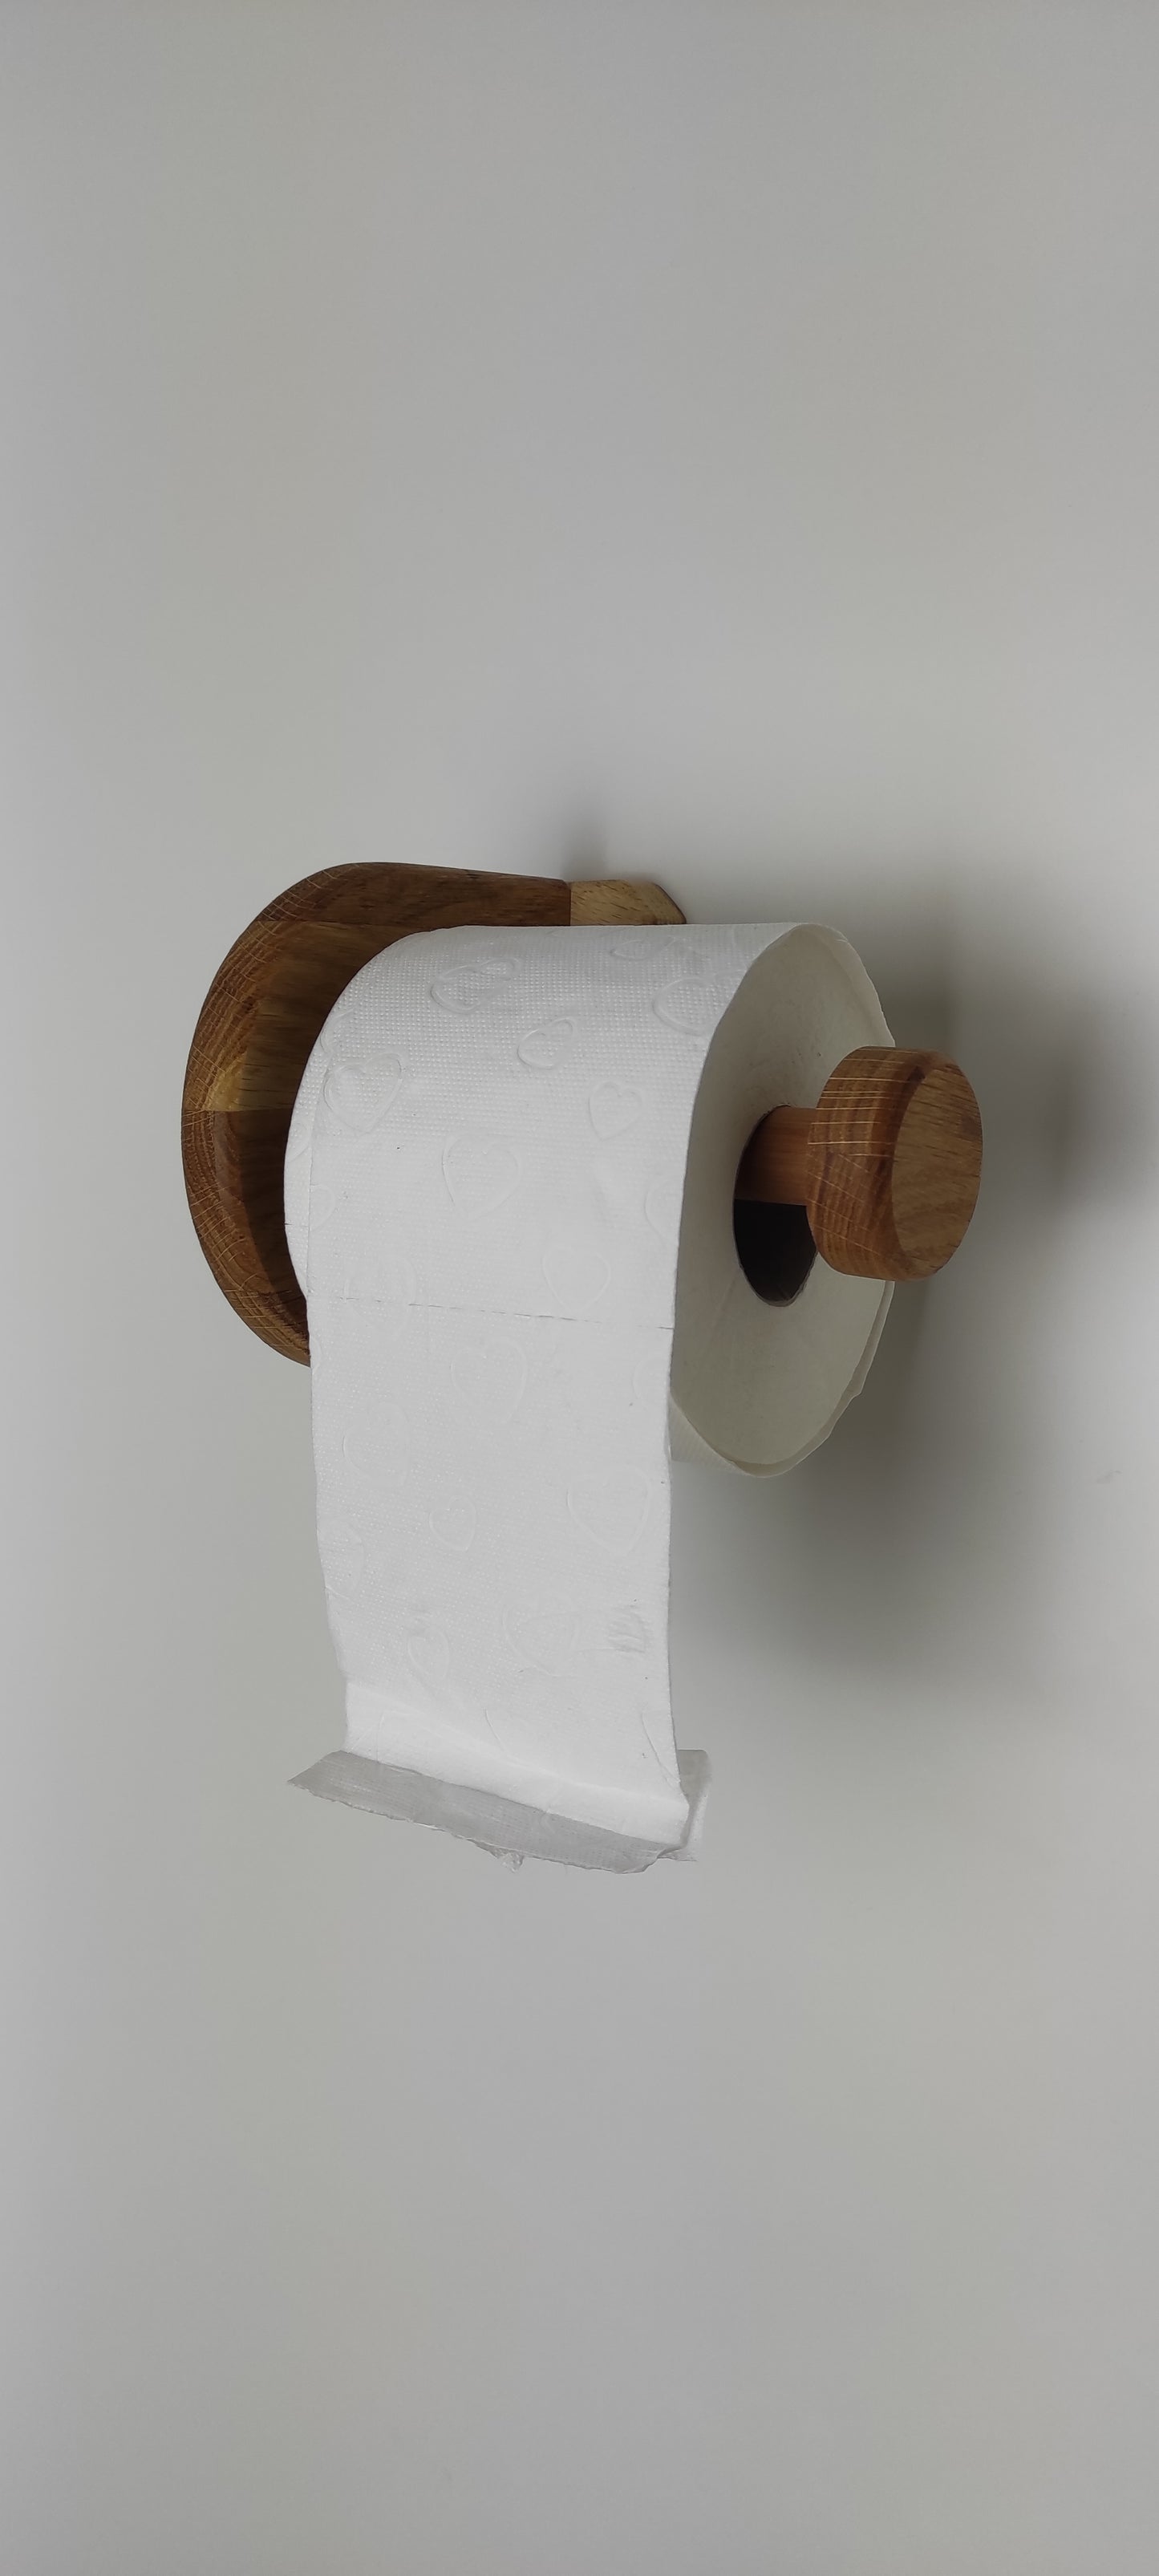 Moderner Toiletenpapierhalter mit runder Form aus Holz